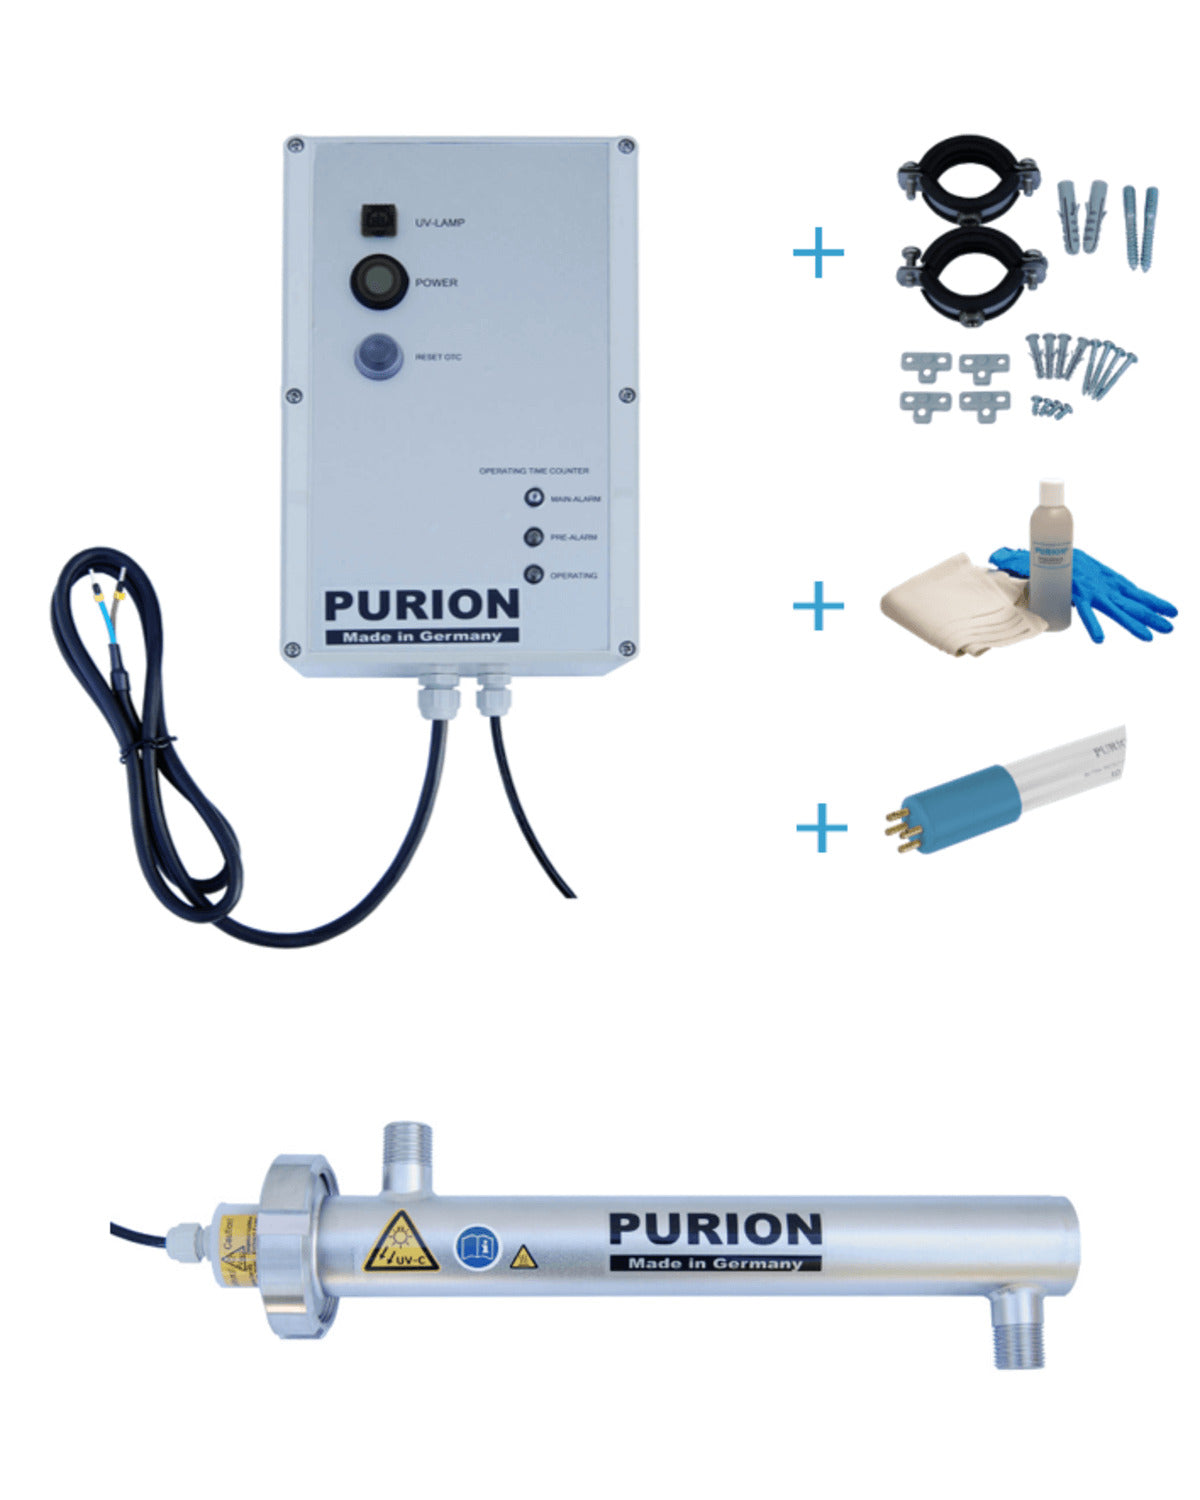 Das von der PURION GmbH entwickelte PURION 500 OTC Bundle ist eine autarke Desinfektionsanlage und Trinkwasseraufbereitung, die sauberes Trinkwasser für einen autonomen Lebensstil gewährleistet.